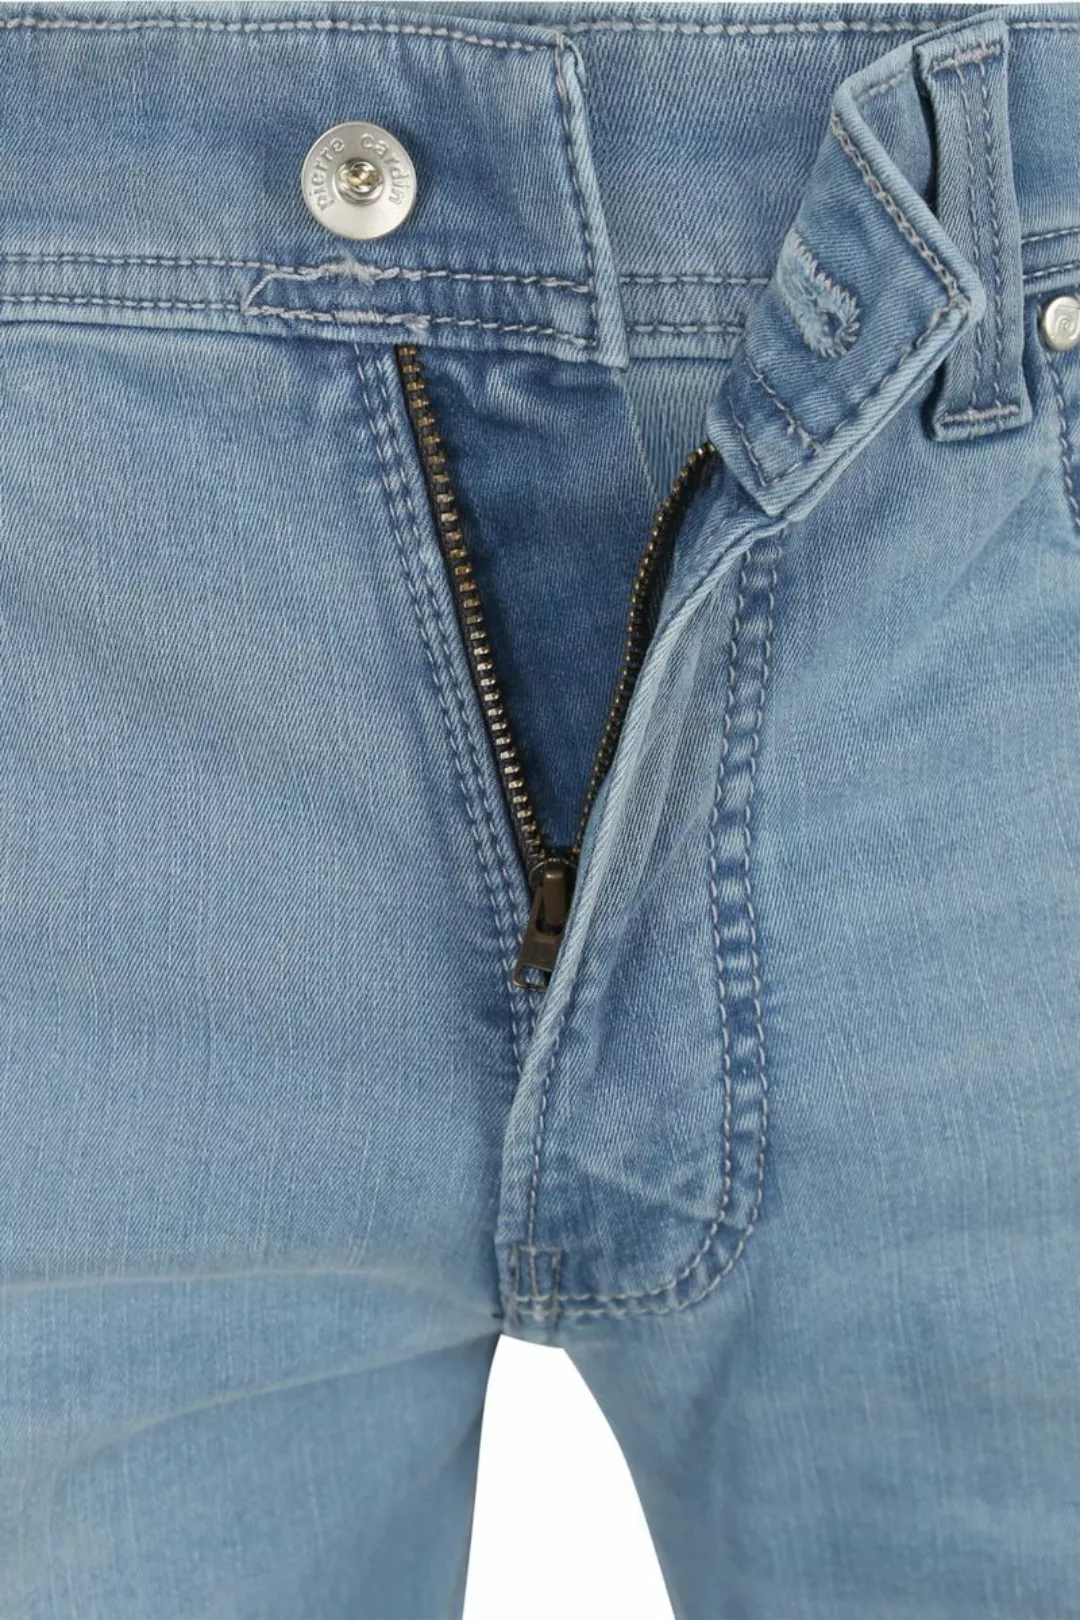 Pierre Cardin Jeans Lyon Tapered Future Flex Hellblau  - Größe W 35 - L 34 günstig online kaufen